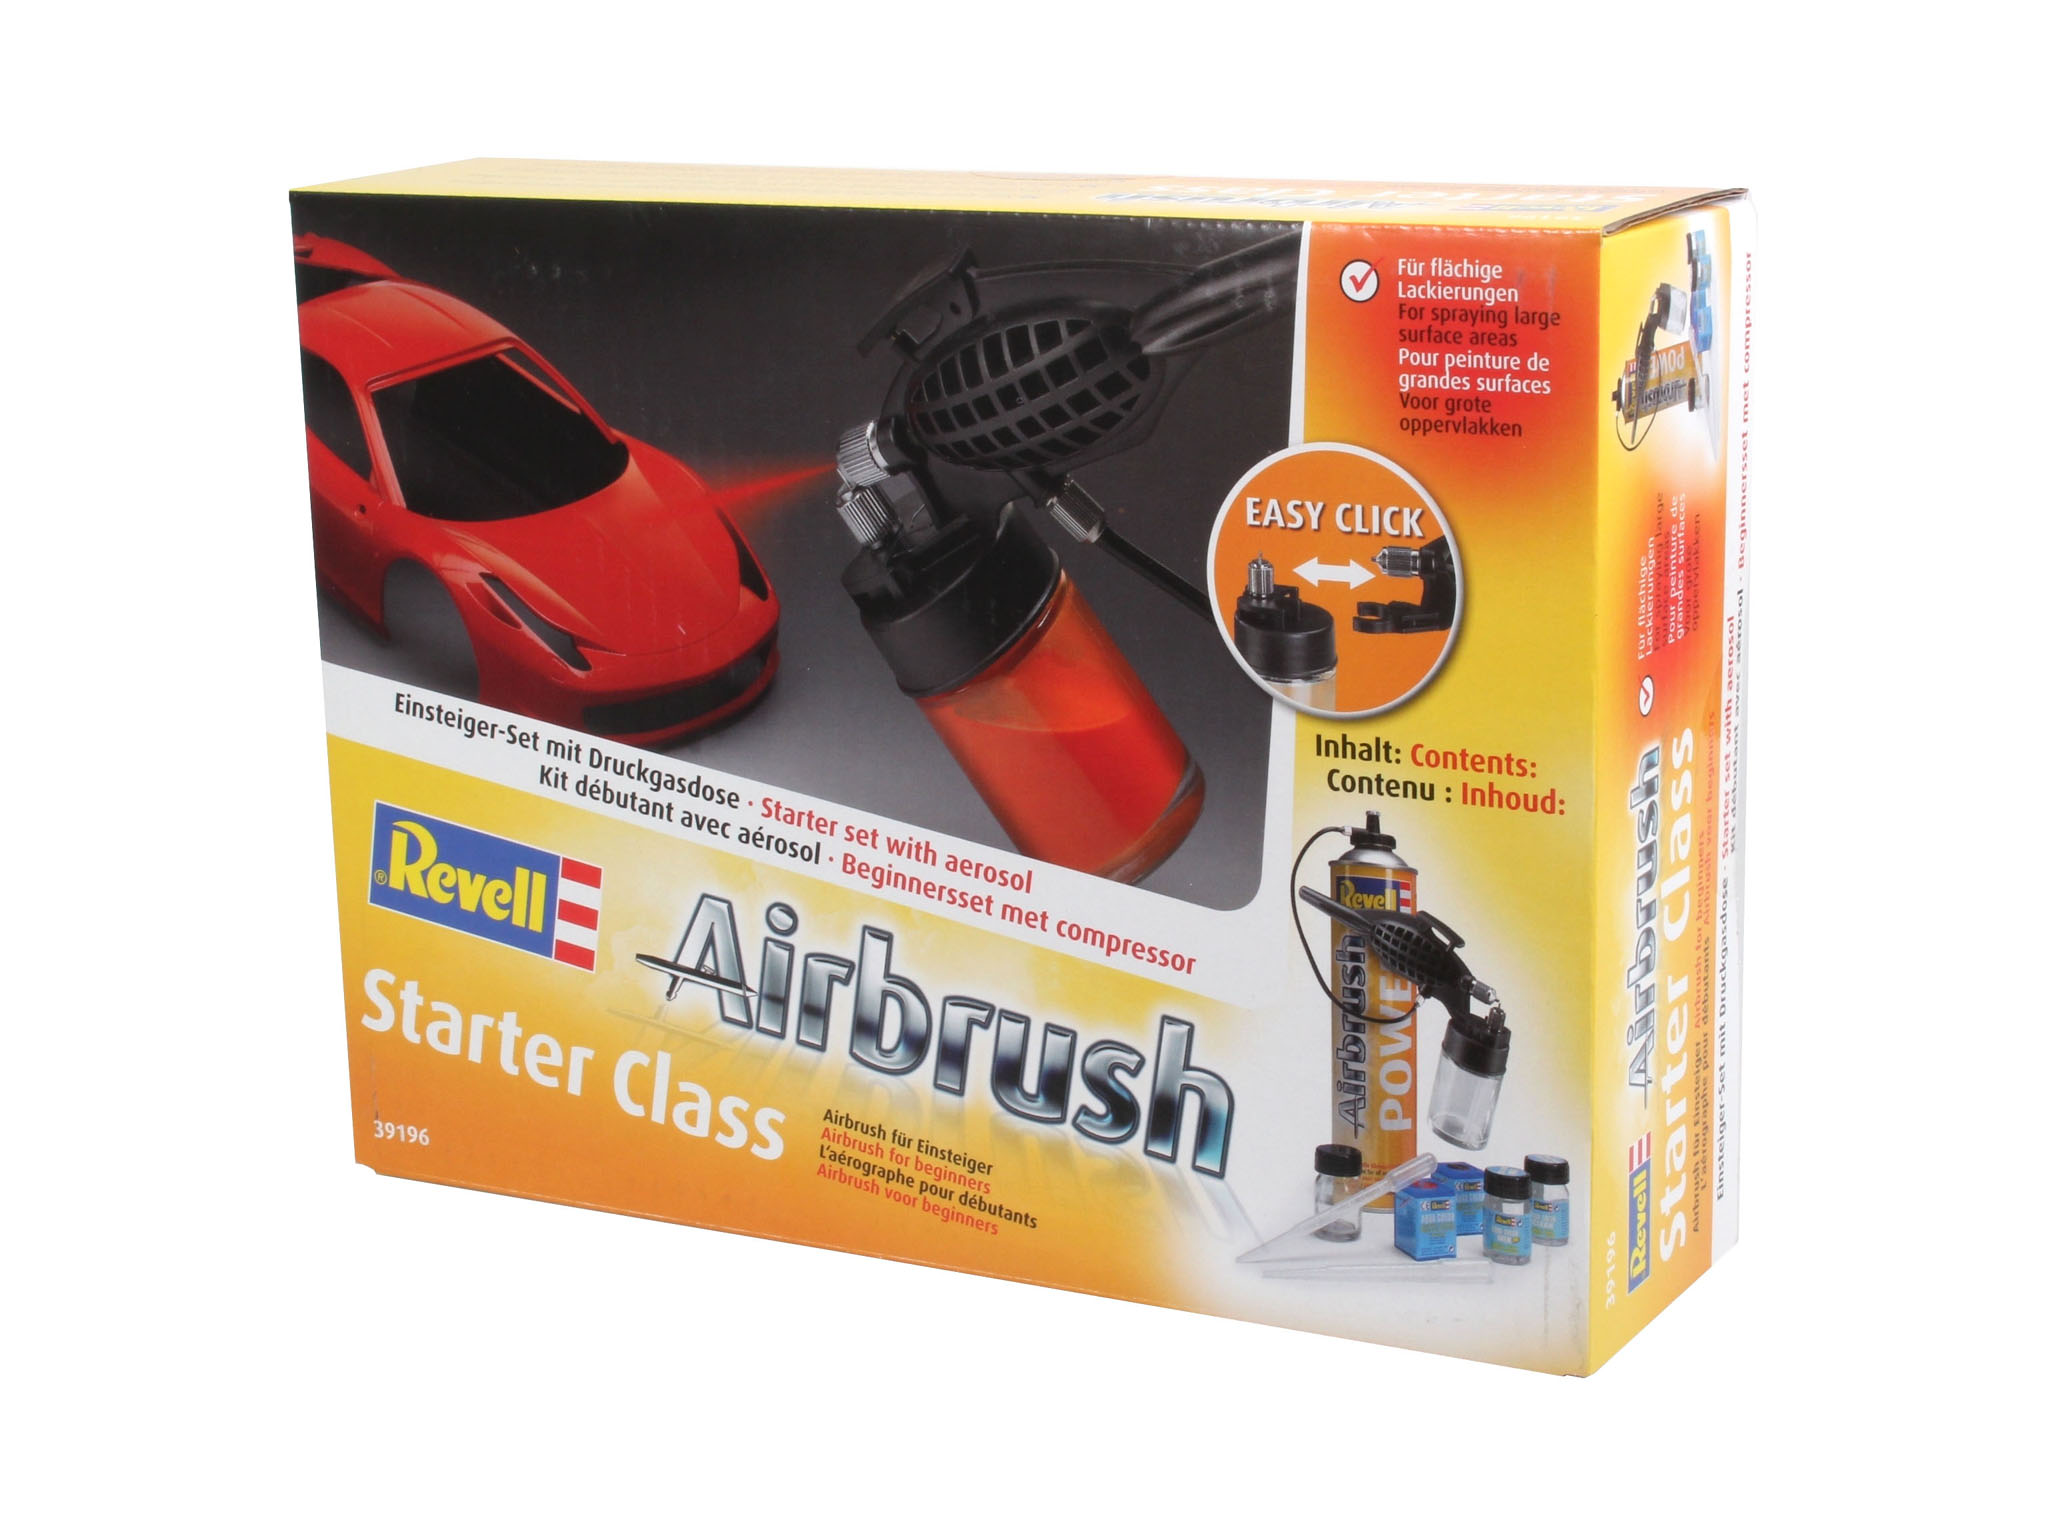 Airbrush Starter Class set - Komplett Set Starter Class